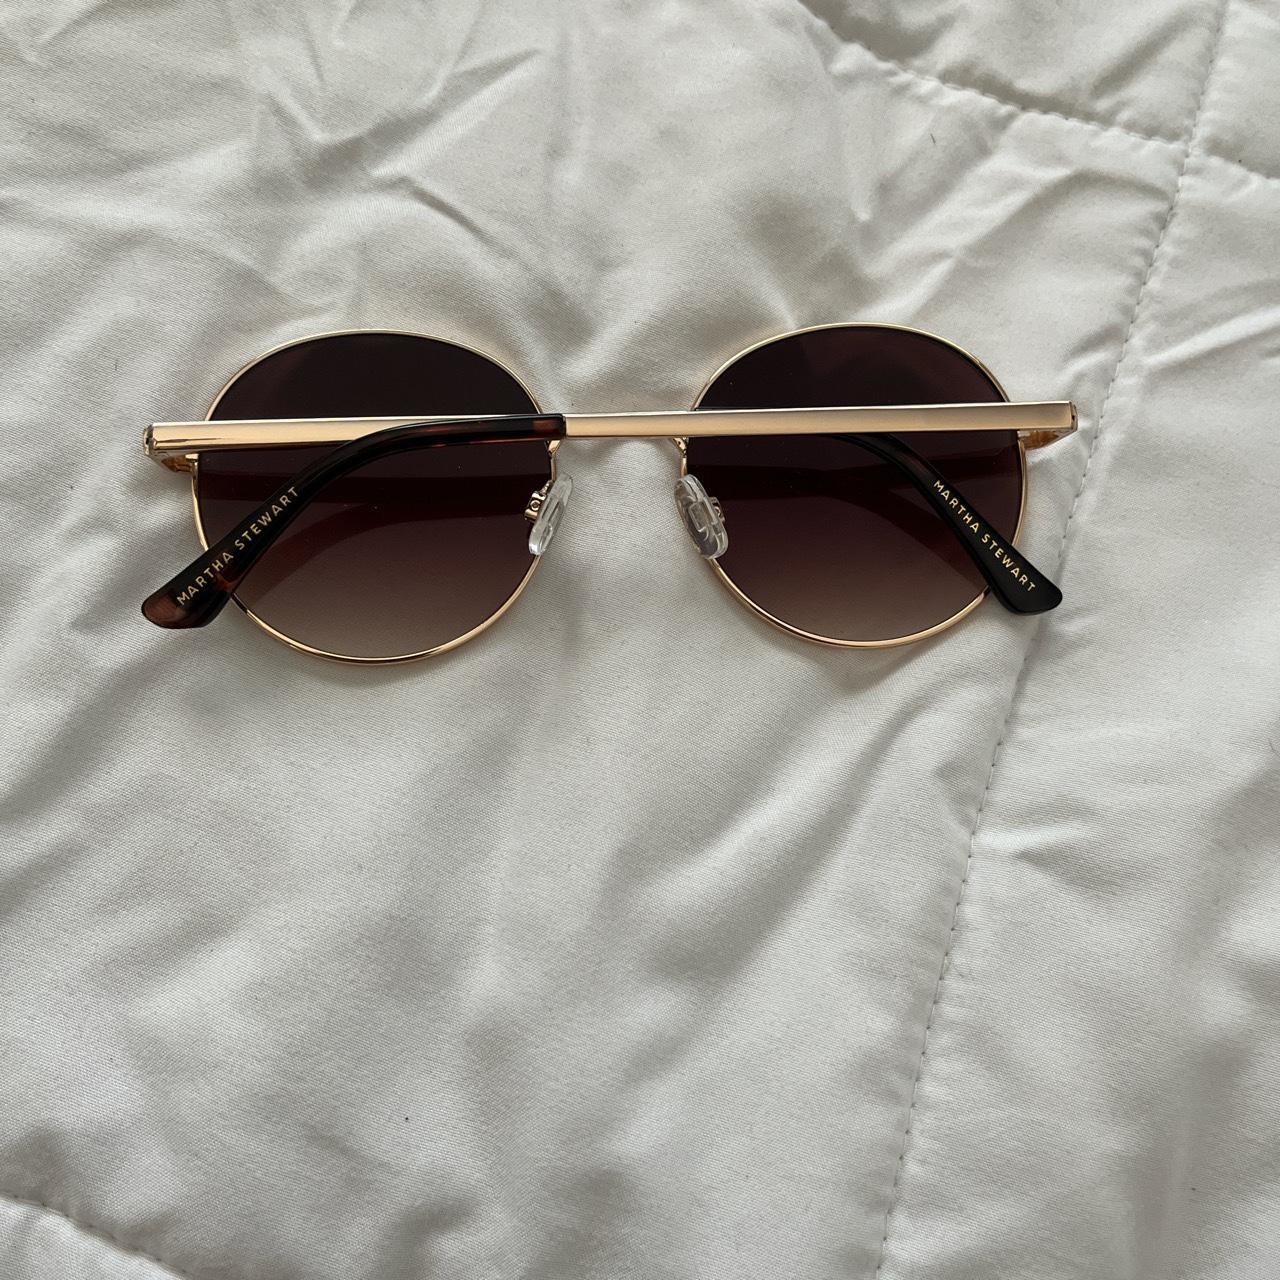 Martha Stewart Collection Women's Brown Sunglasses (2)